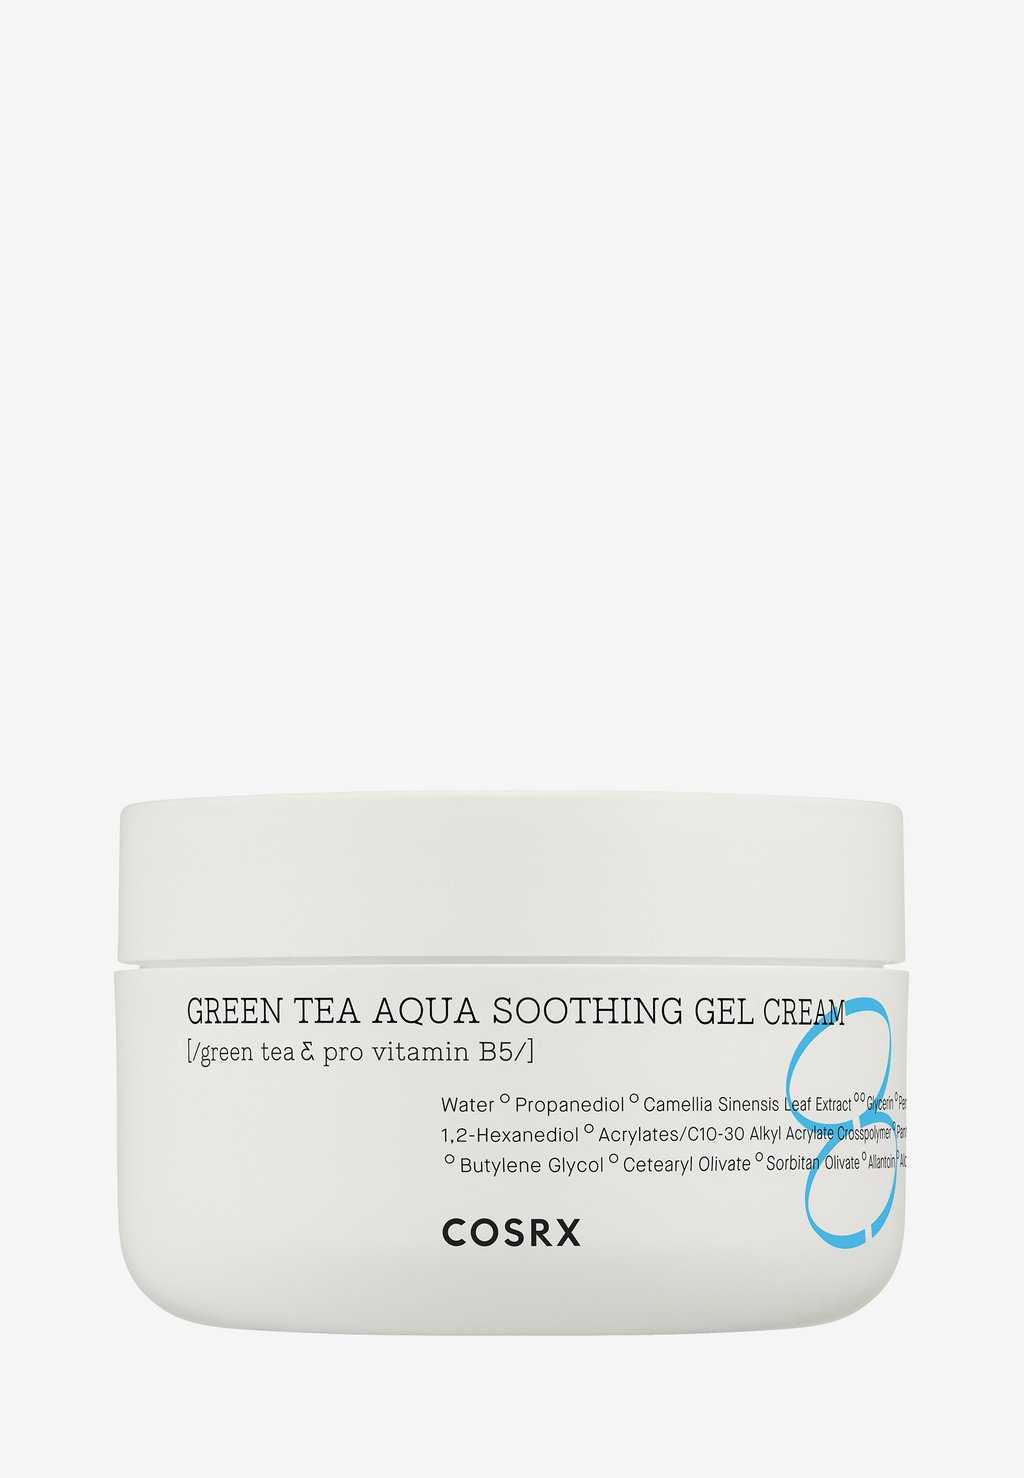 Дневной крем Green Tea Aqua Soothing Gel Cream COSRX cosrx hydrium green tea aqua успокаивающий гель крем